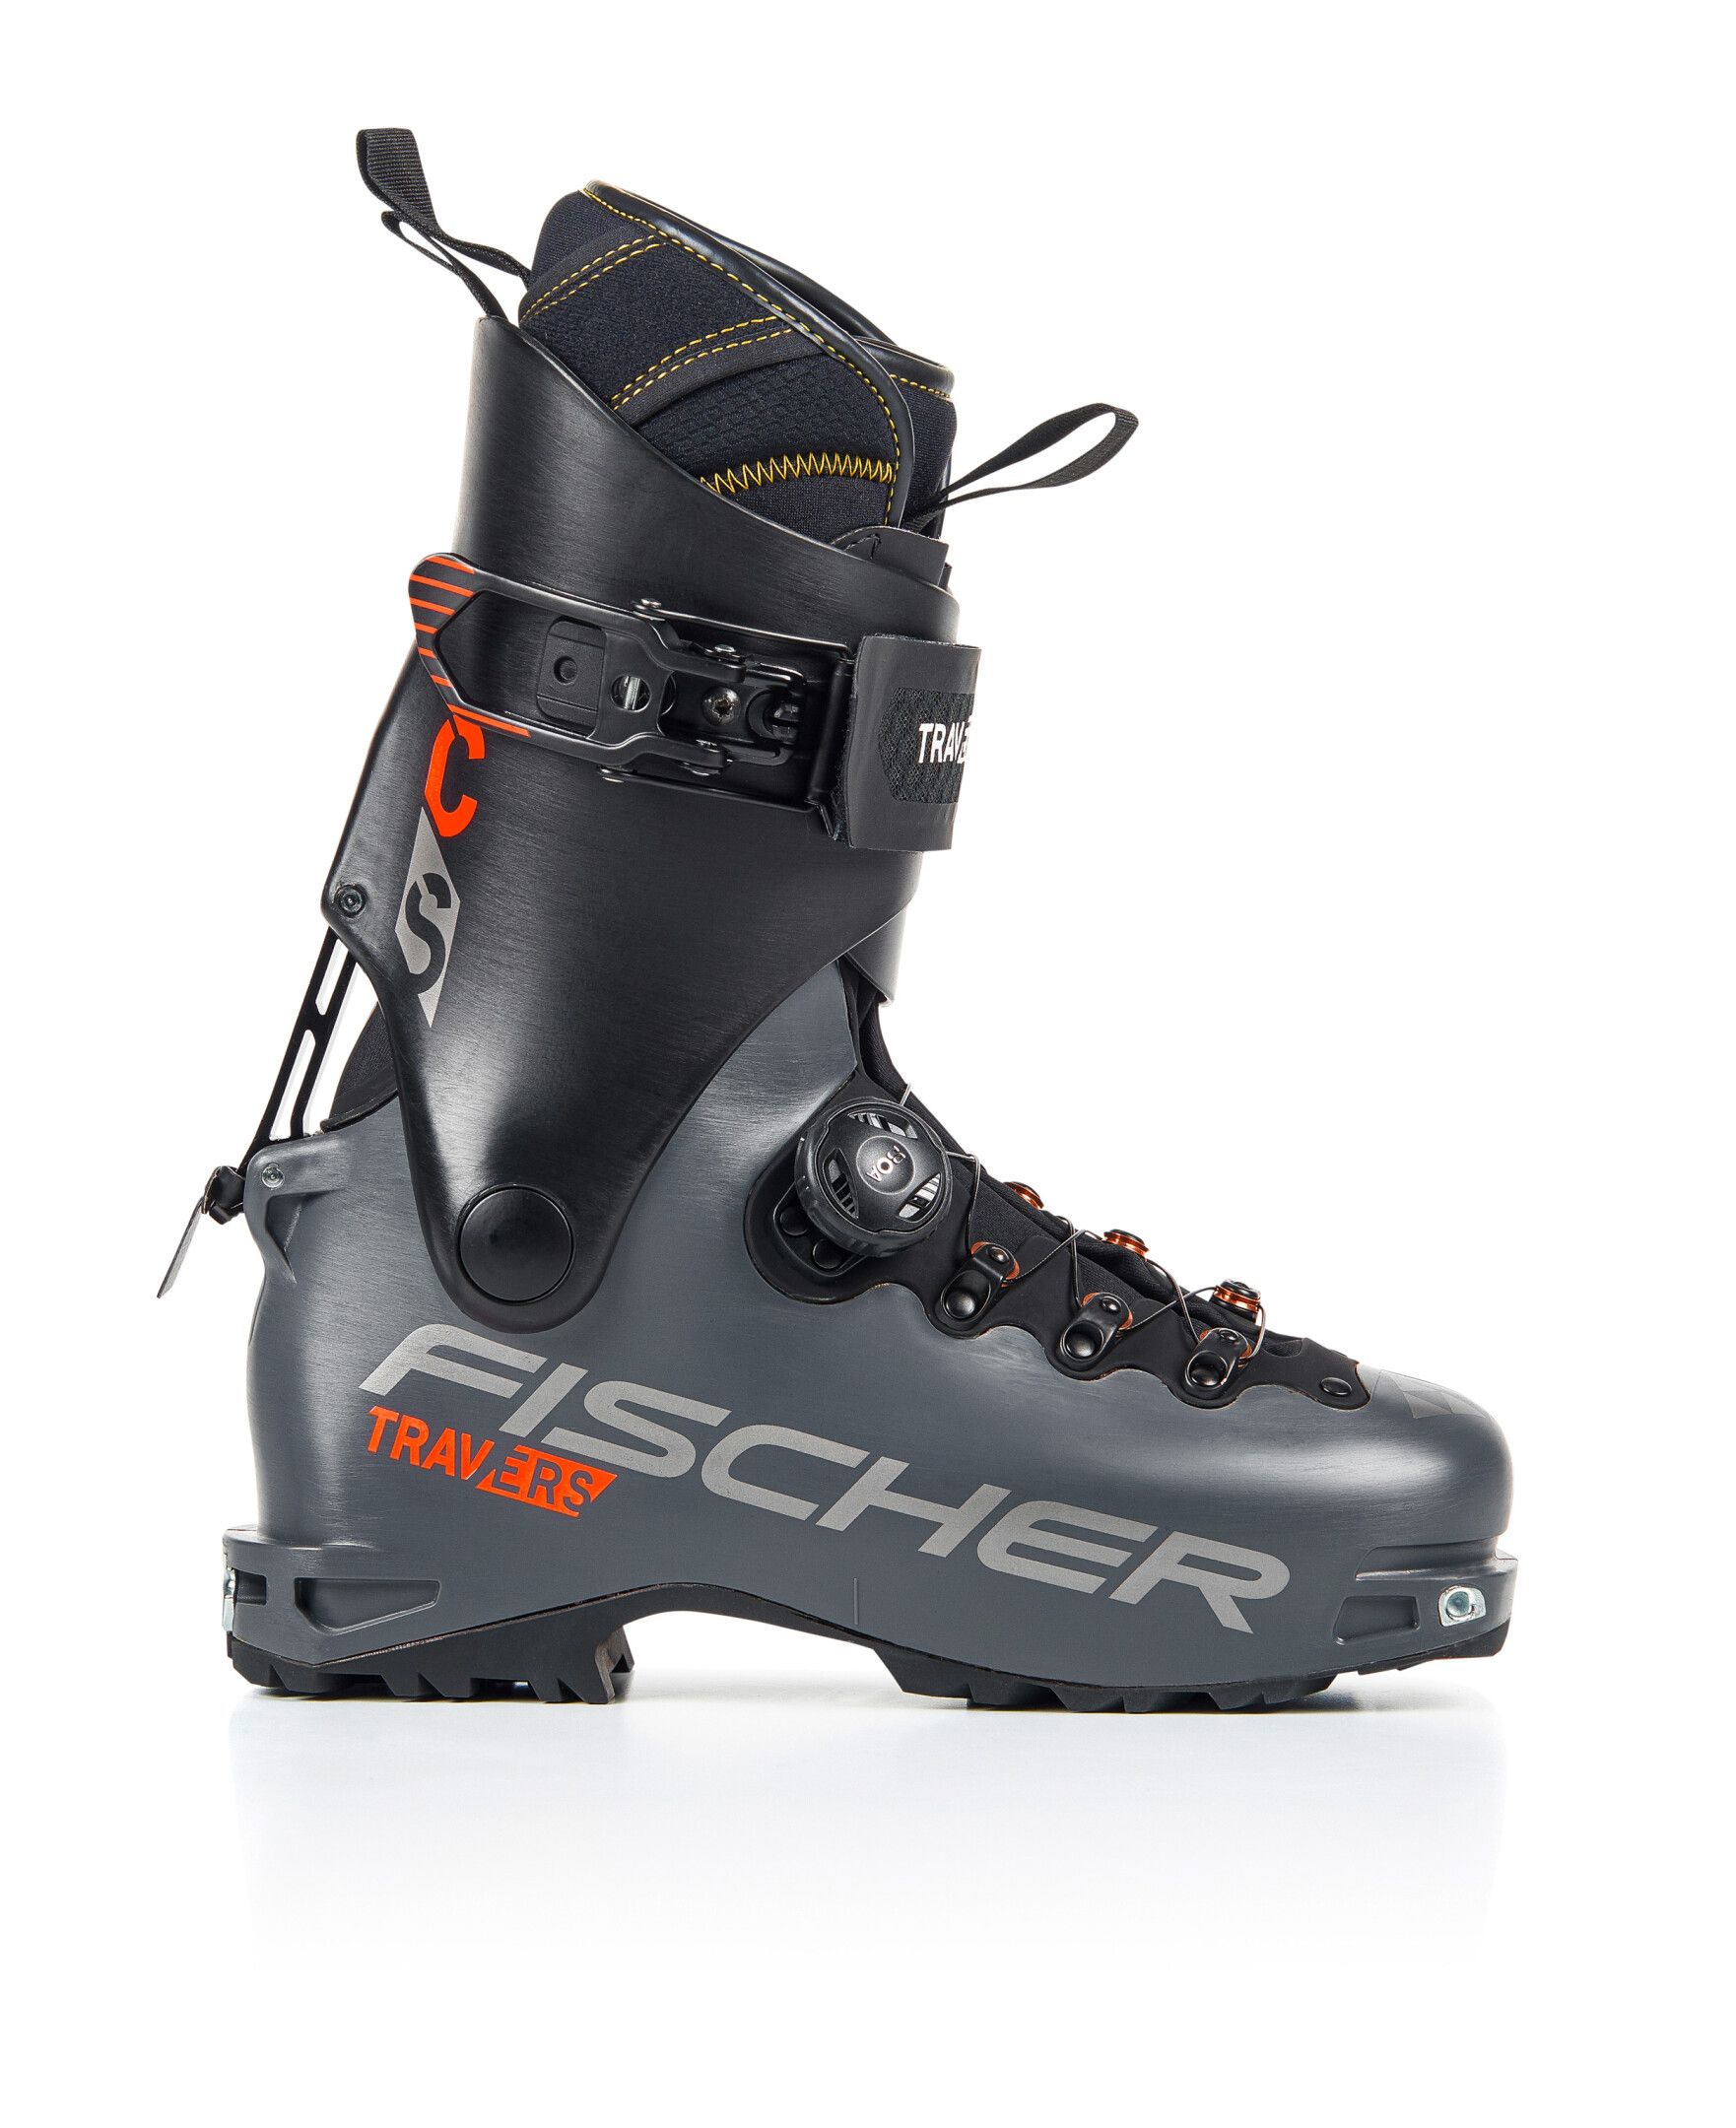 Chaussures de ski de randonnée Travers CS - Gris / Noir